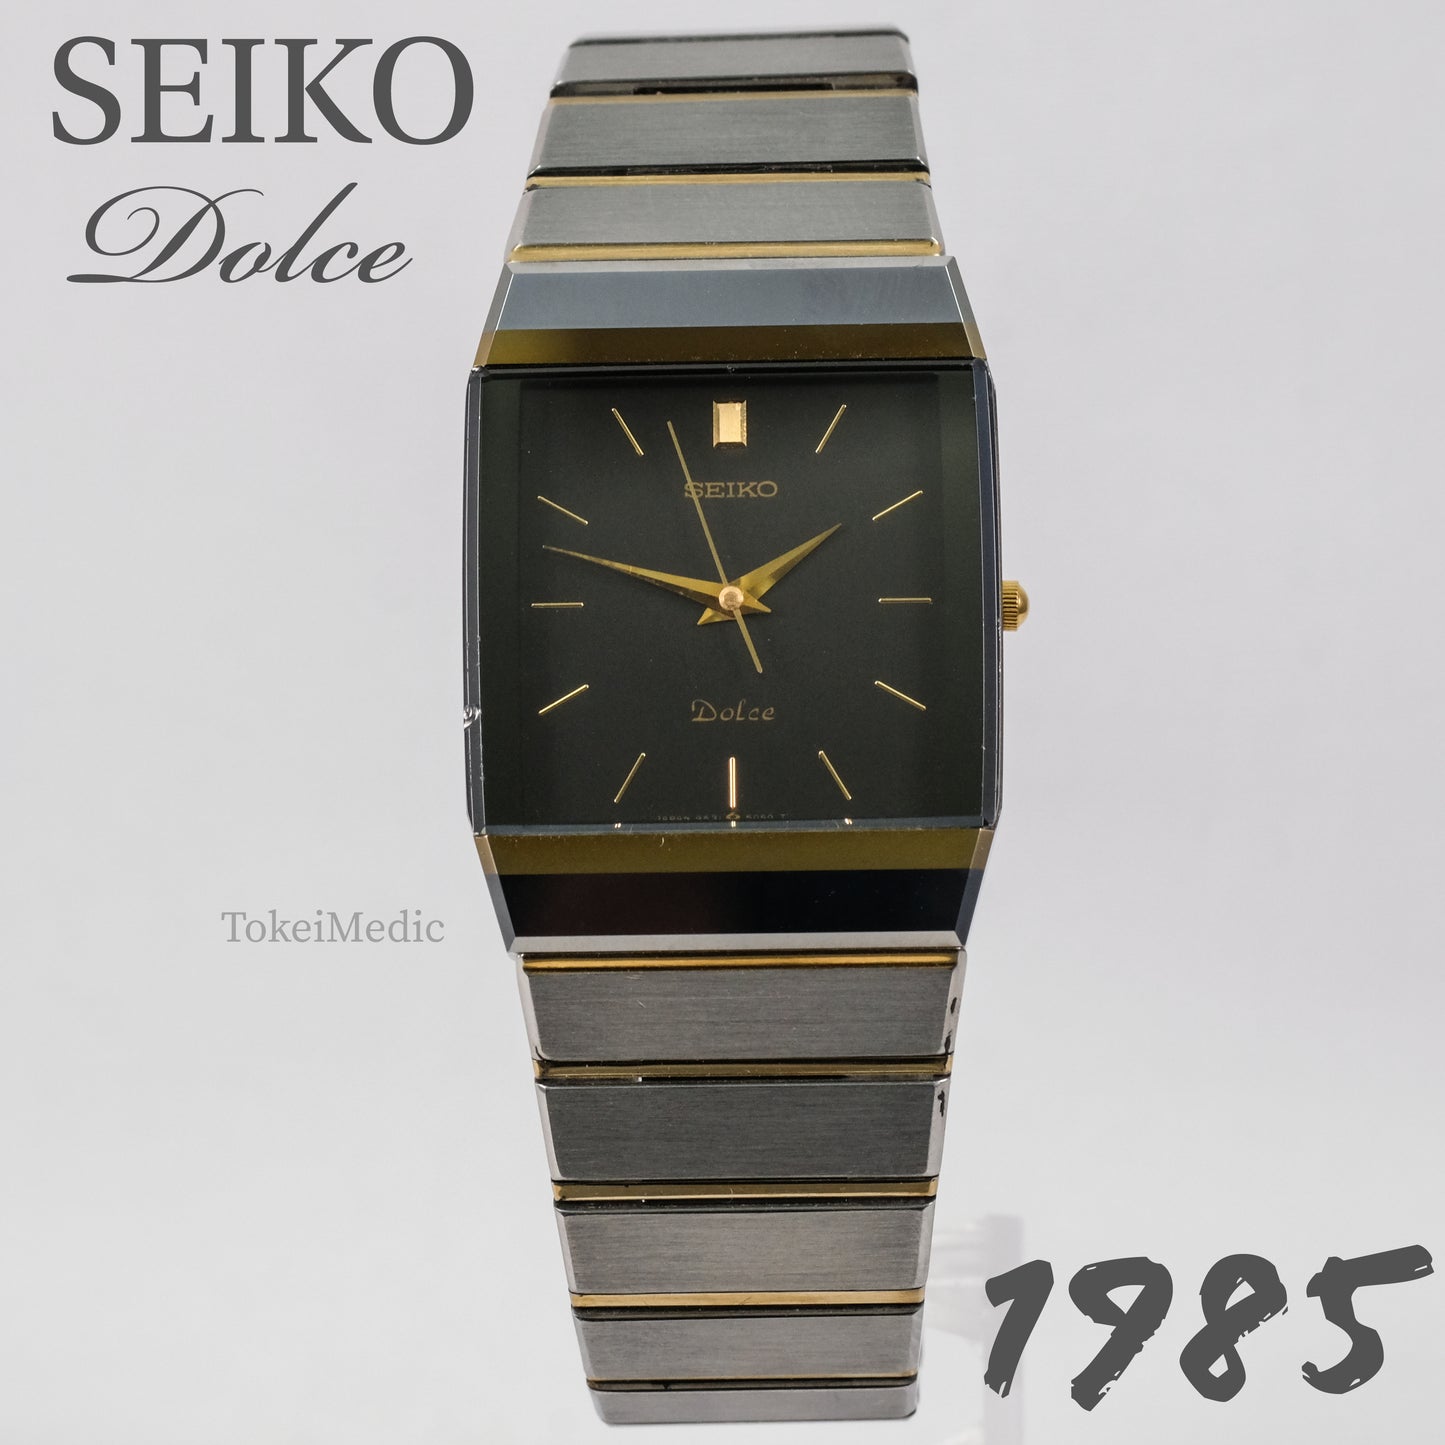 1985 Seiko Dolce 9531-5060